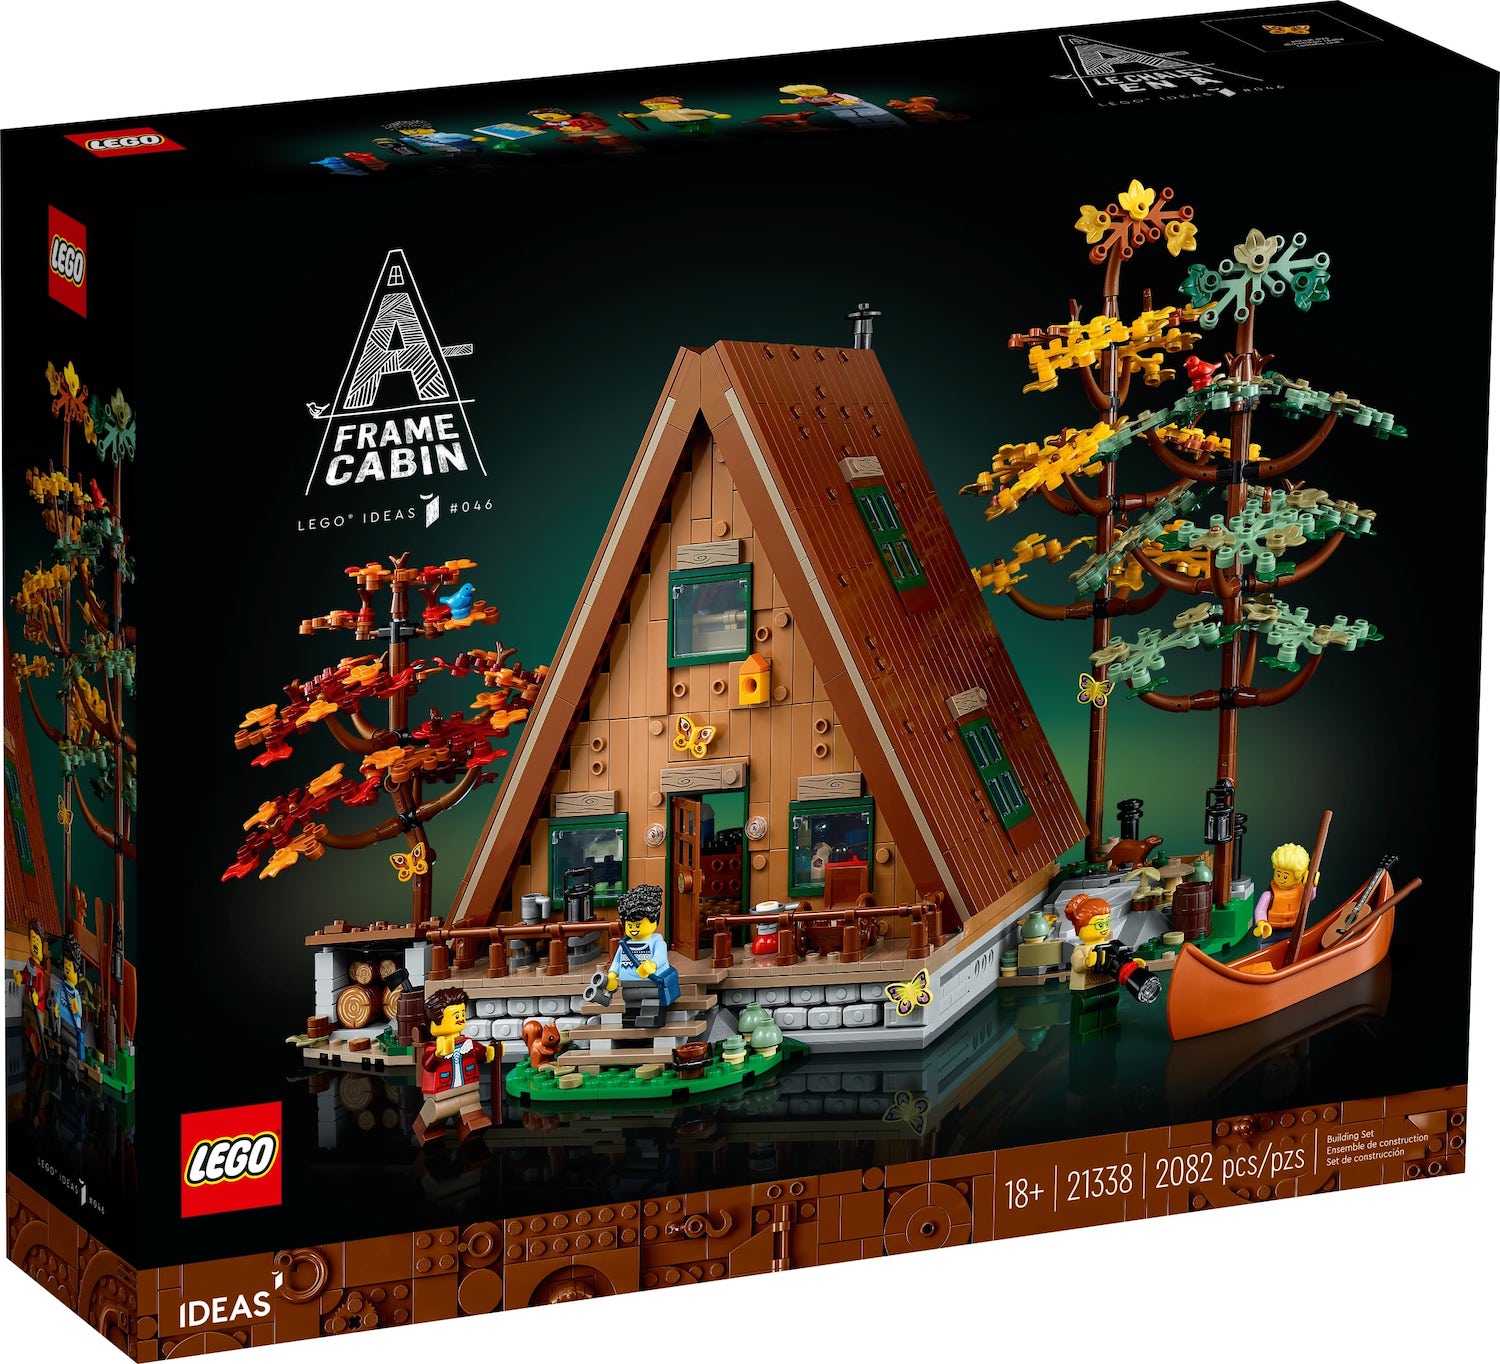 LEGO Ideas A-Frame Cabin officieel aangekondigd